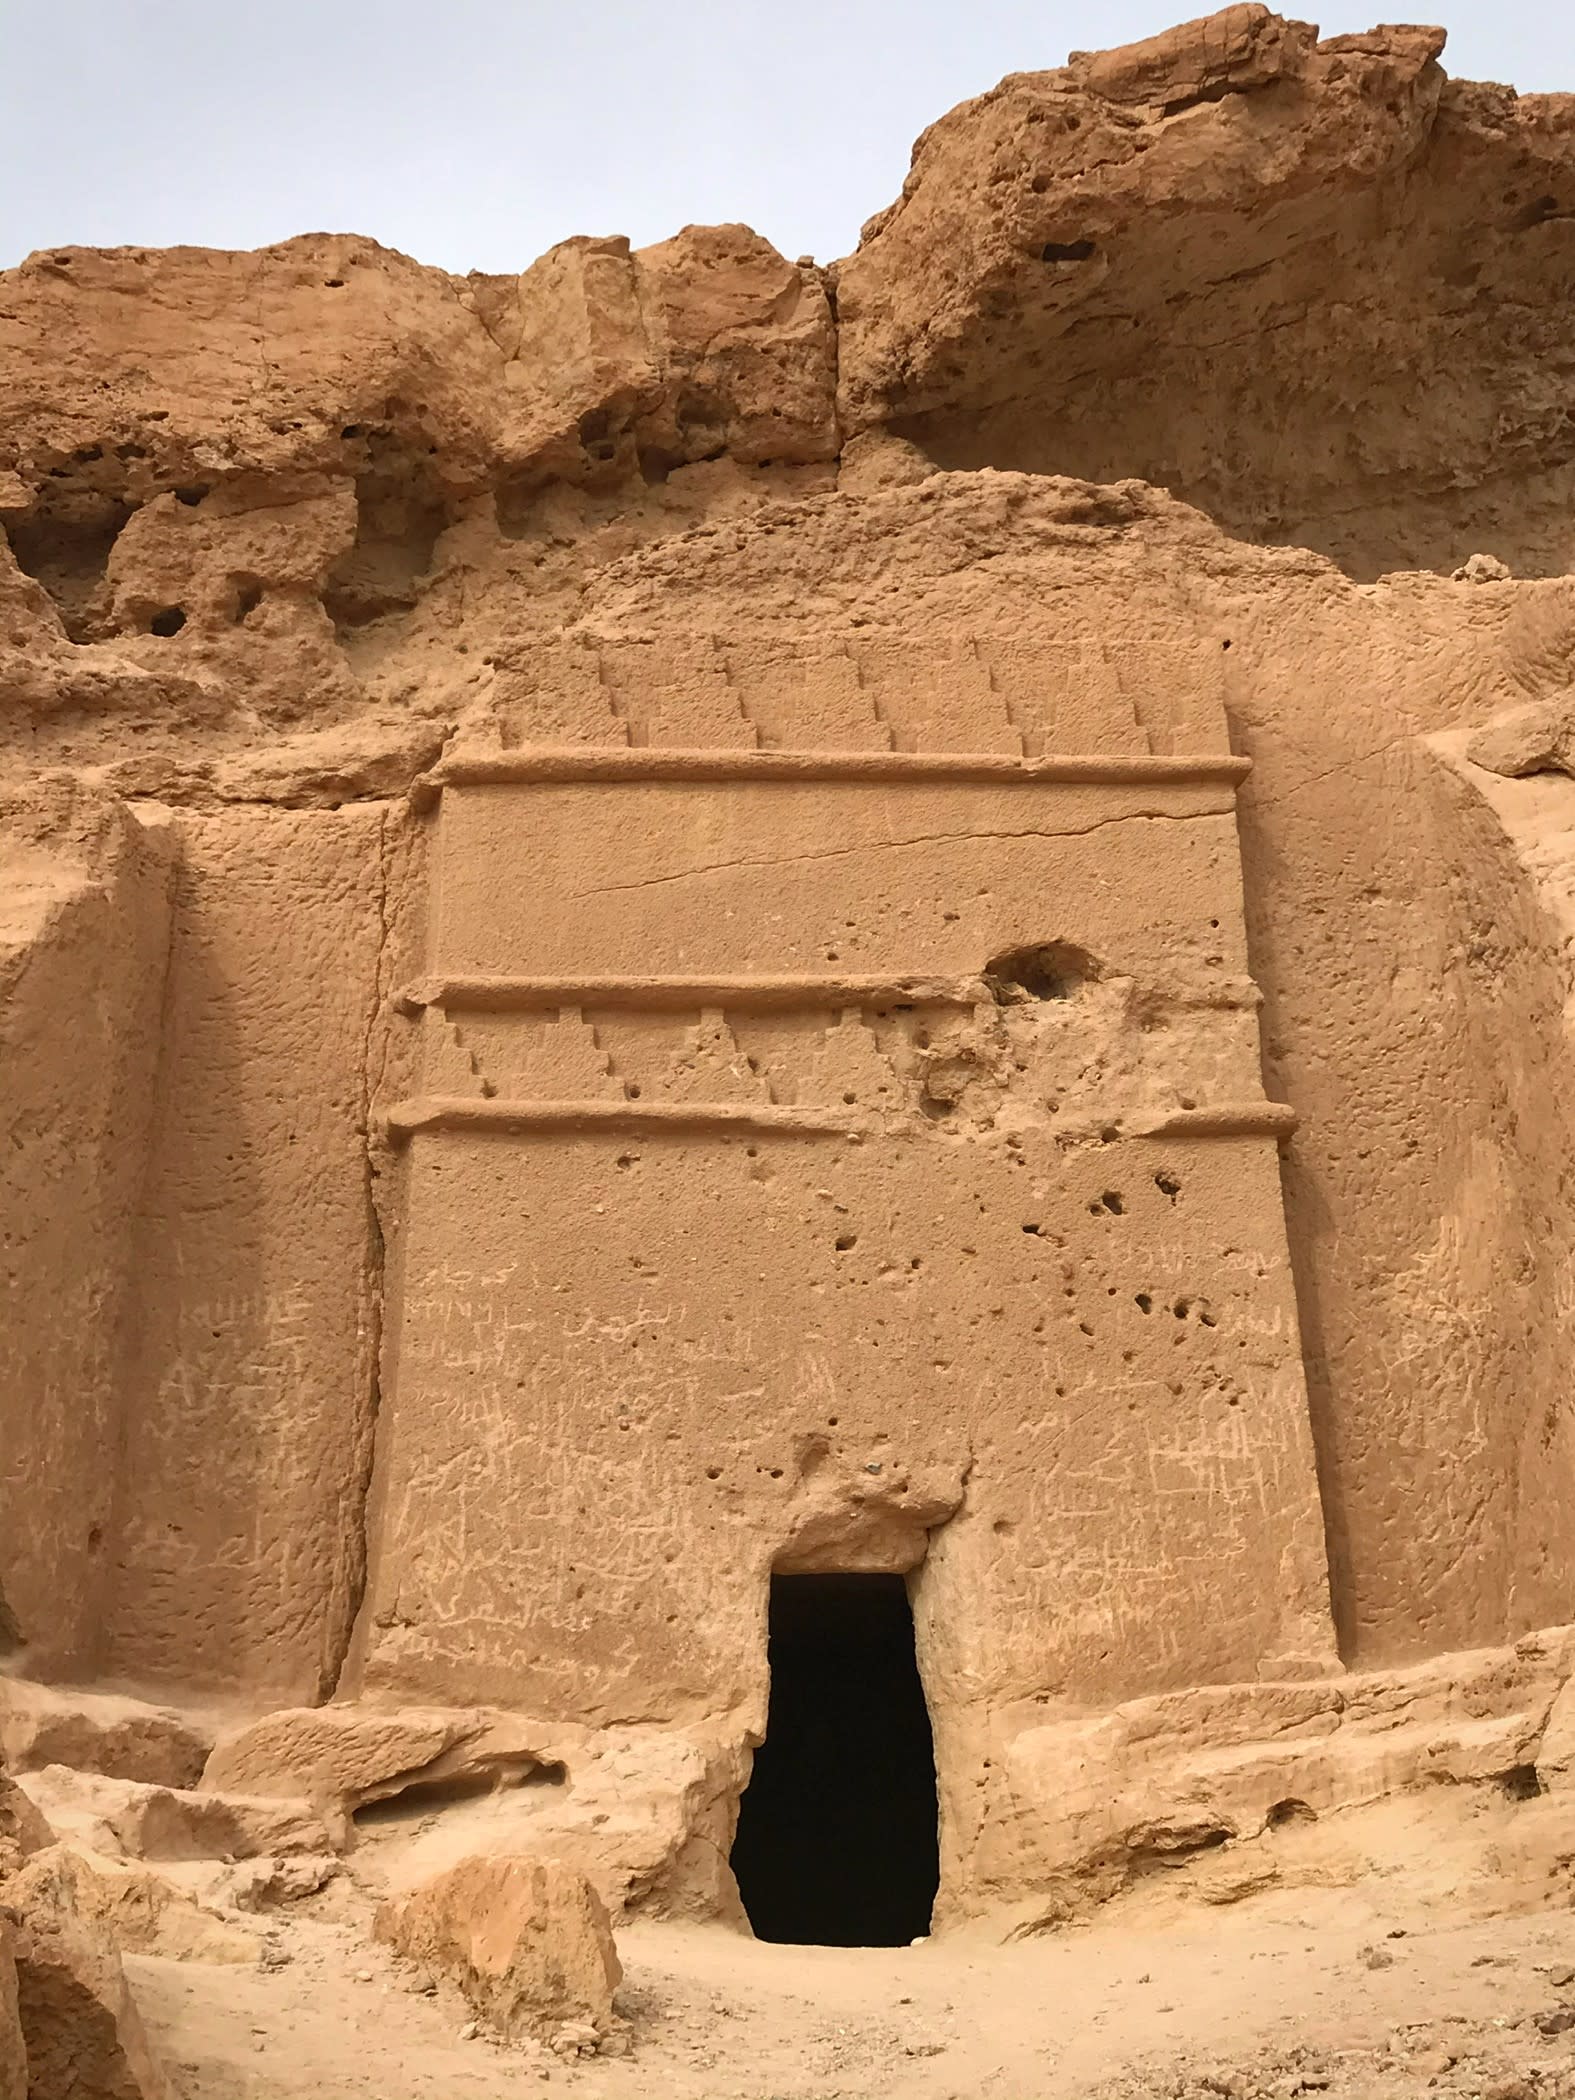 قبور منحوتة في الصخور ترجع إلى العصر النبطي في السعودية.. ما قصتها؟